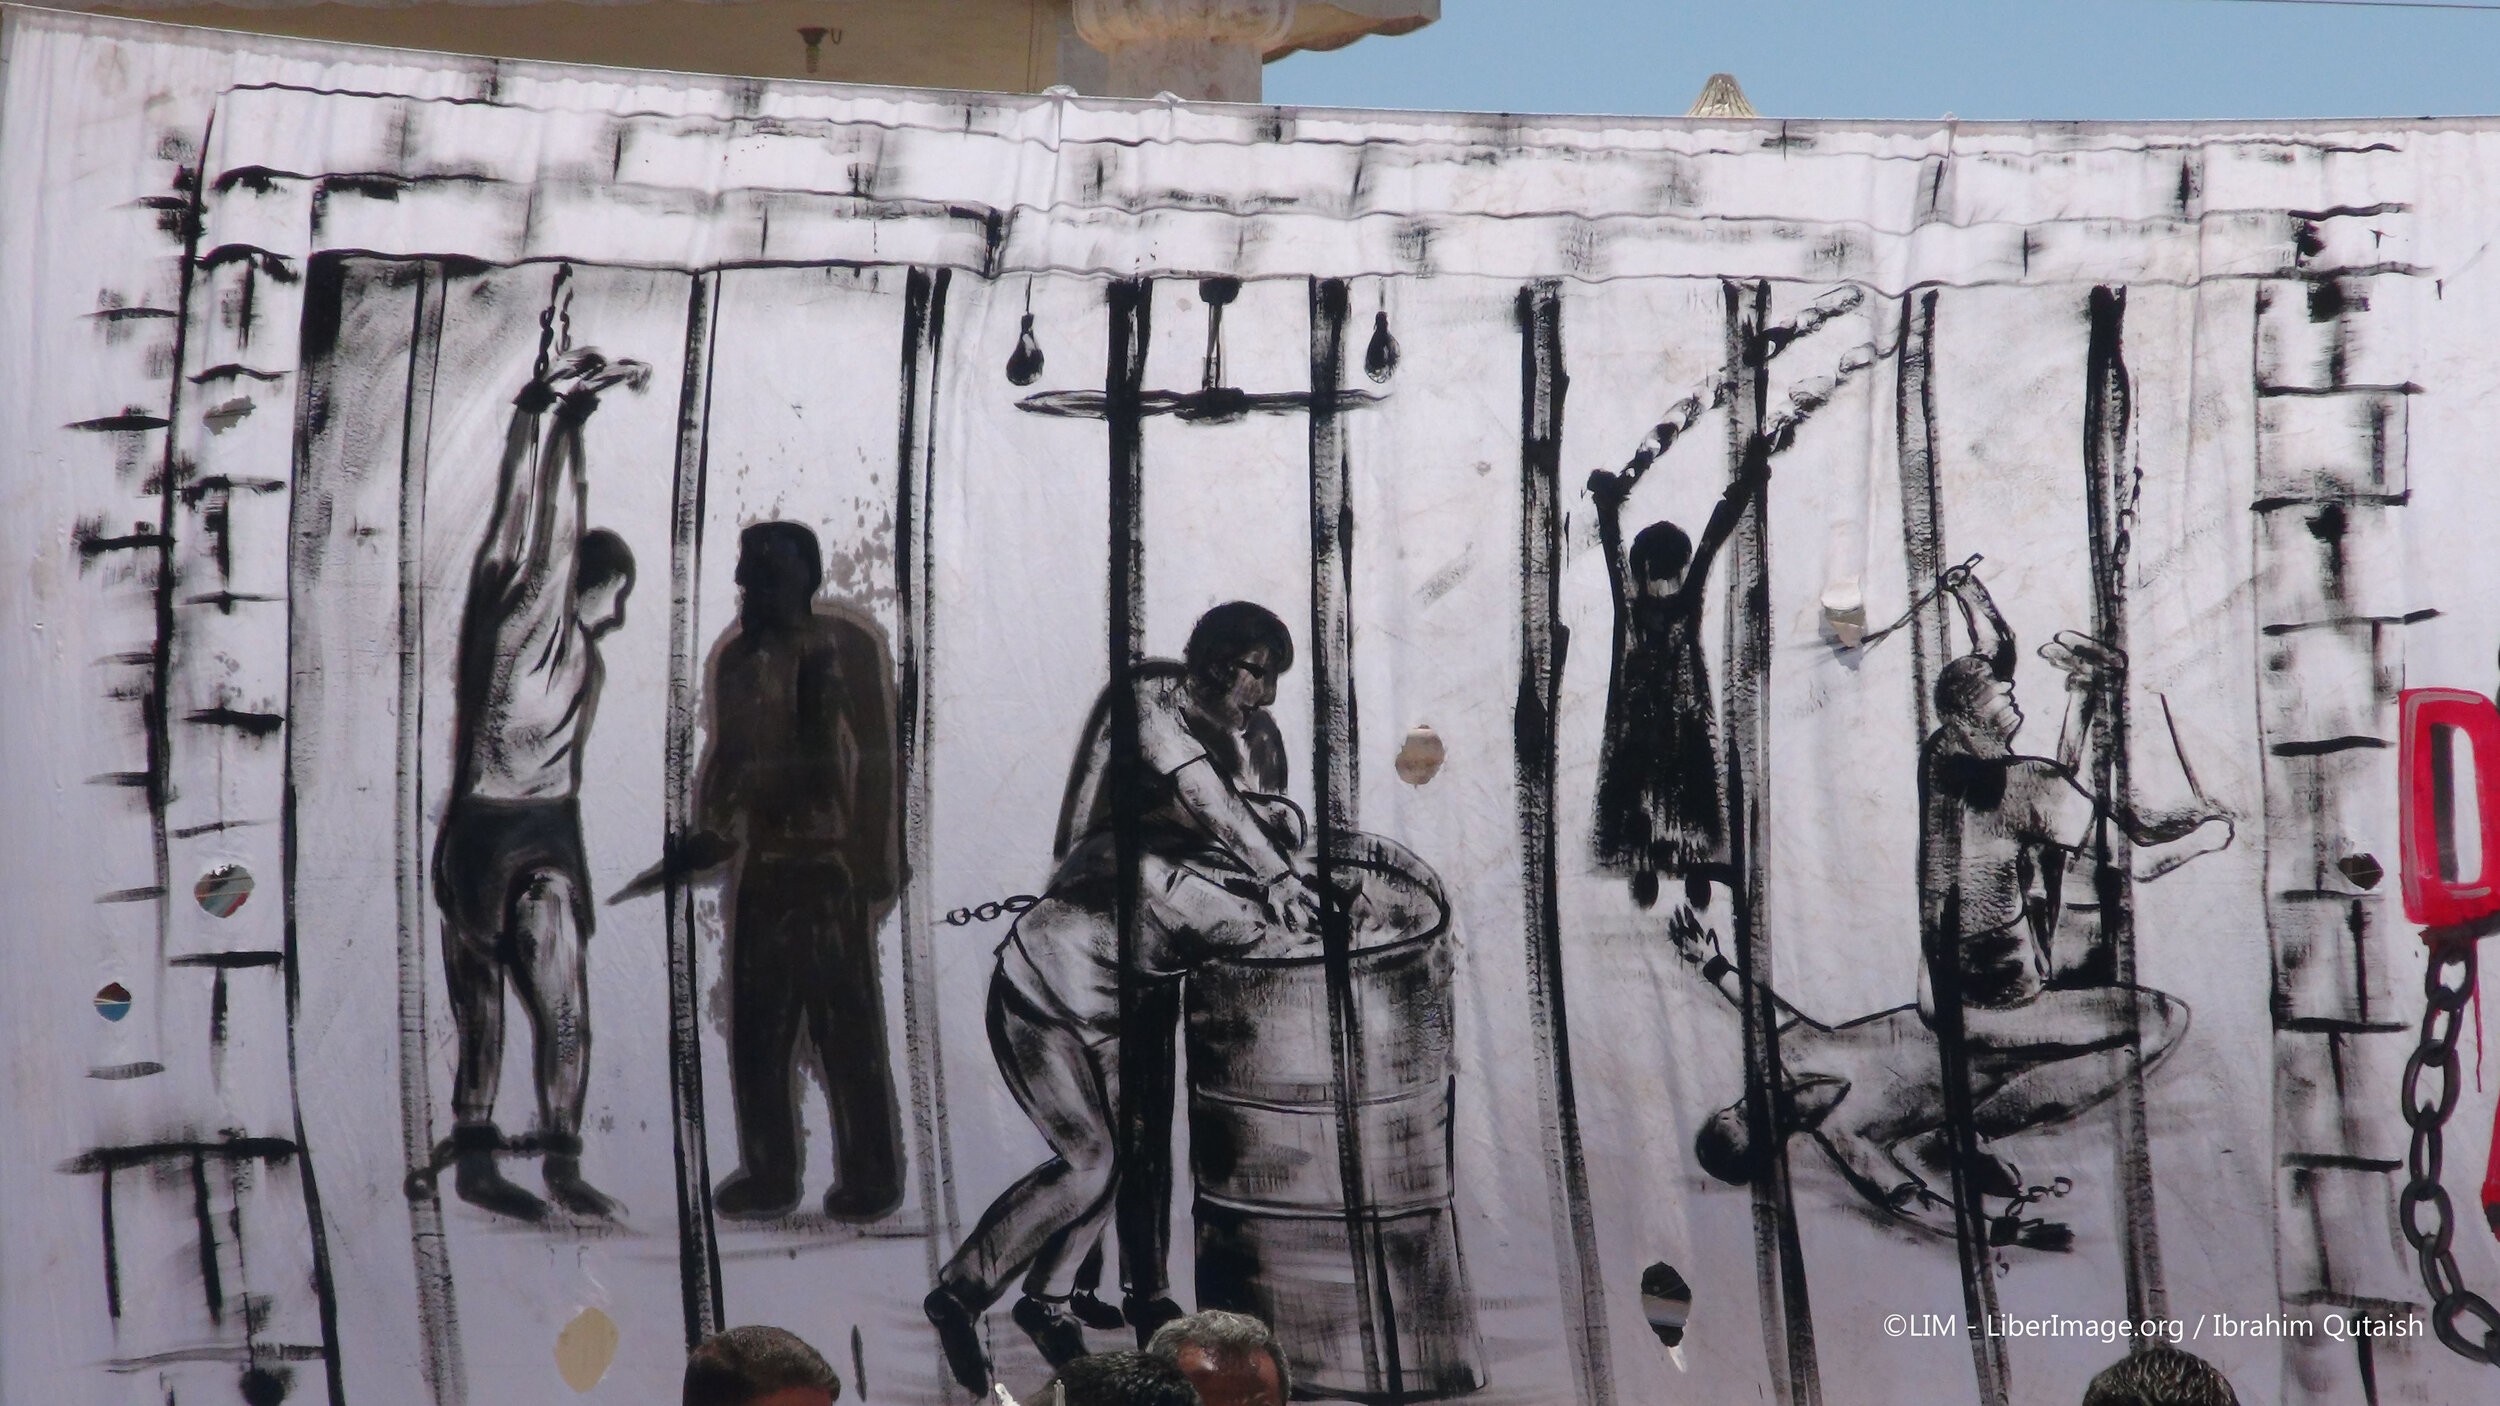 لوحة تجسد المعاناة التي ينالها المعلقون في سجون الأسد، وكالات